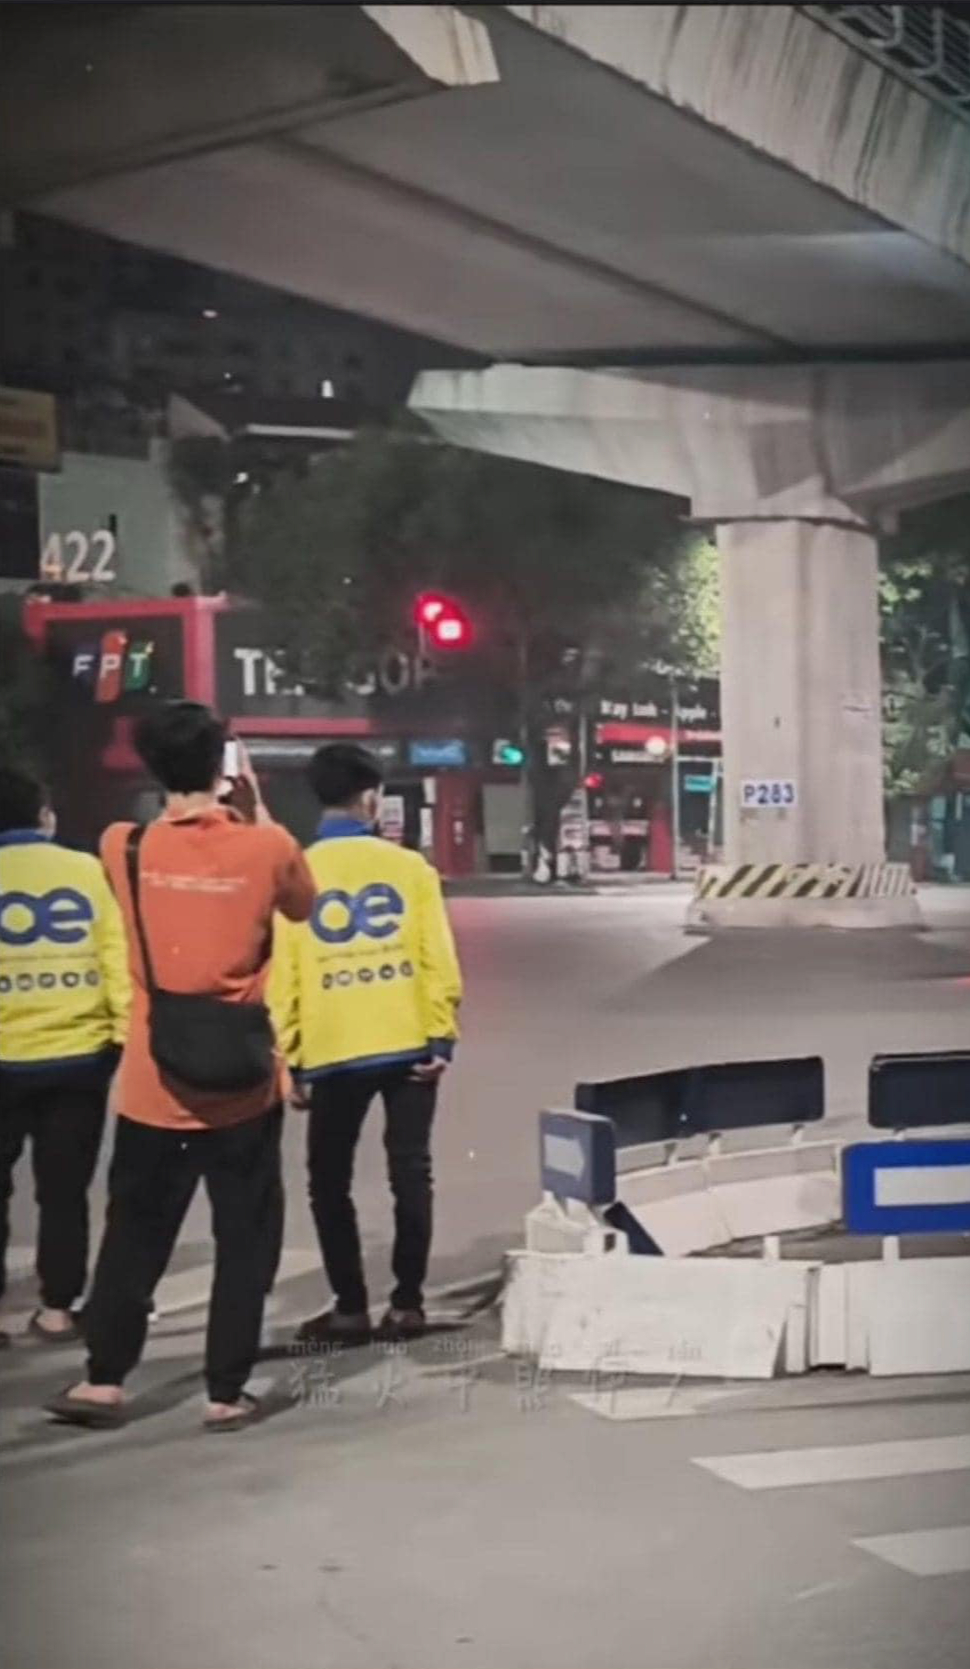 Phố Hà Nội náo loạn giữa đêm bởi nhóm thanh niên mặc áo xe ôm công nghệ, clip khiến bao người bức xúc- Ảnh 2.